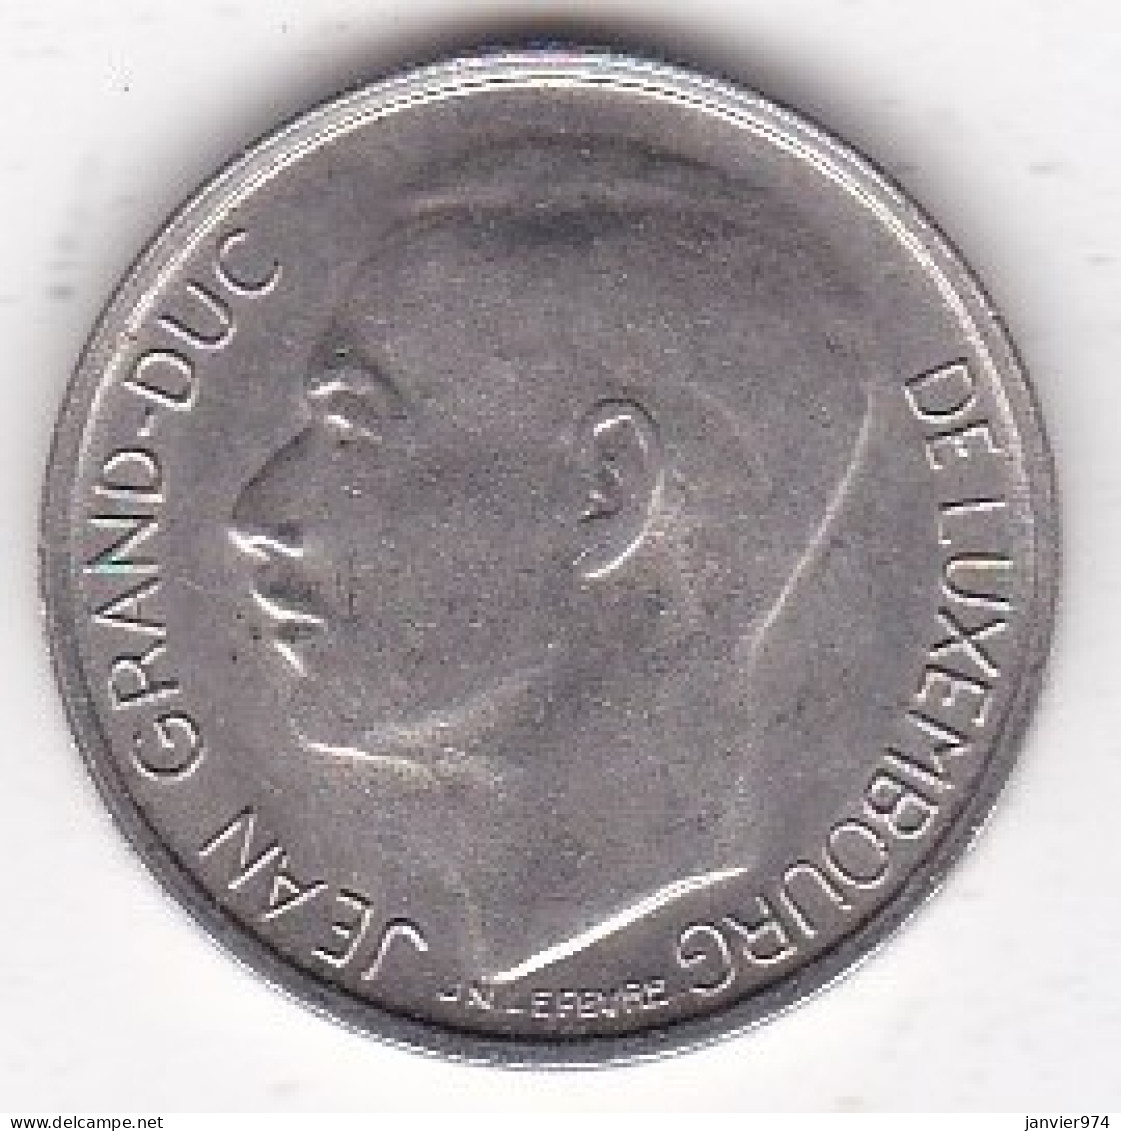 Luxembourg 1 Franc 1972 , Jean, En Cupronickel, KM# 55 - Luxembourg